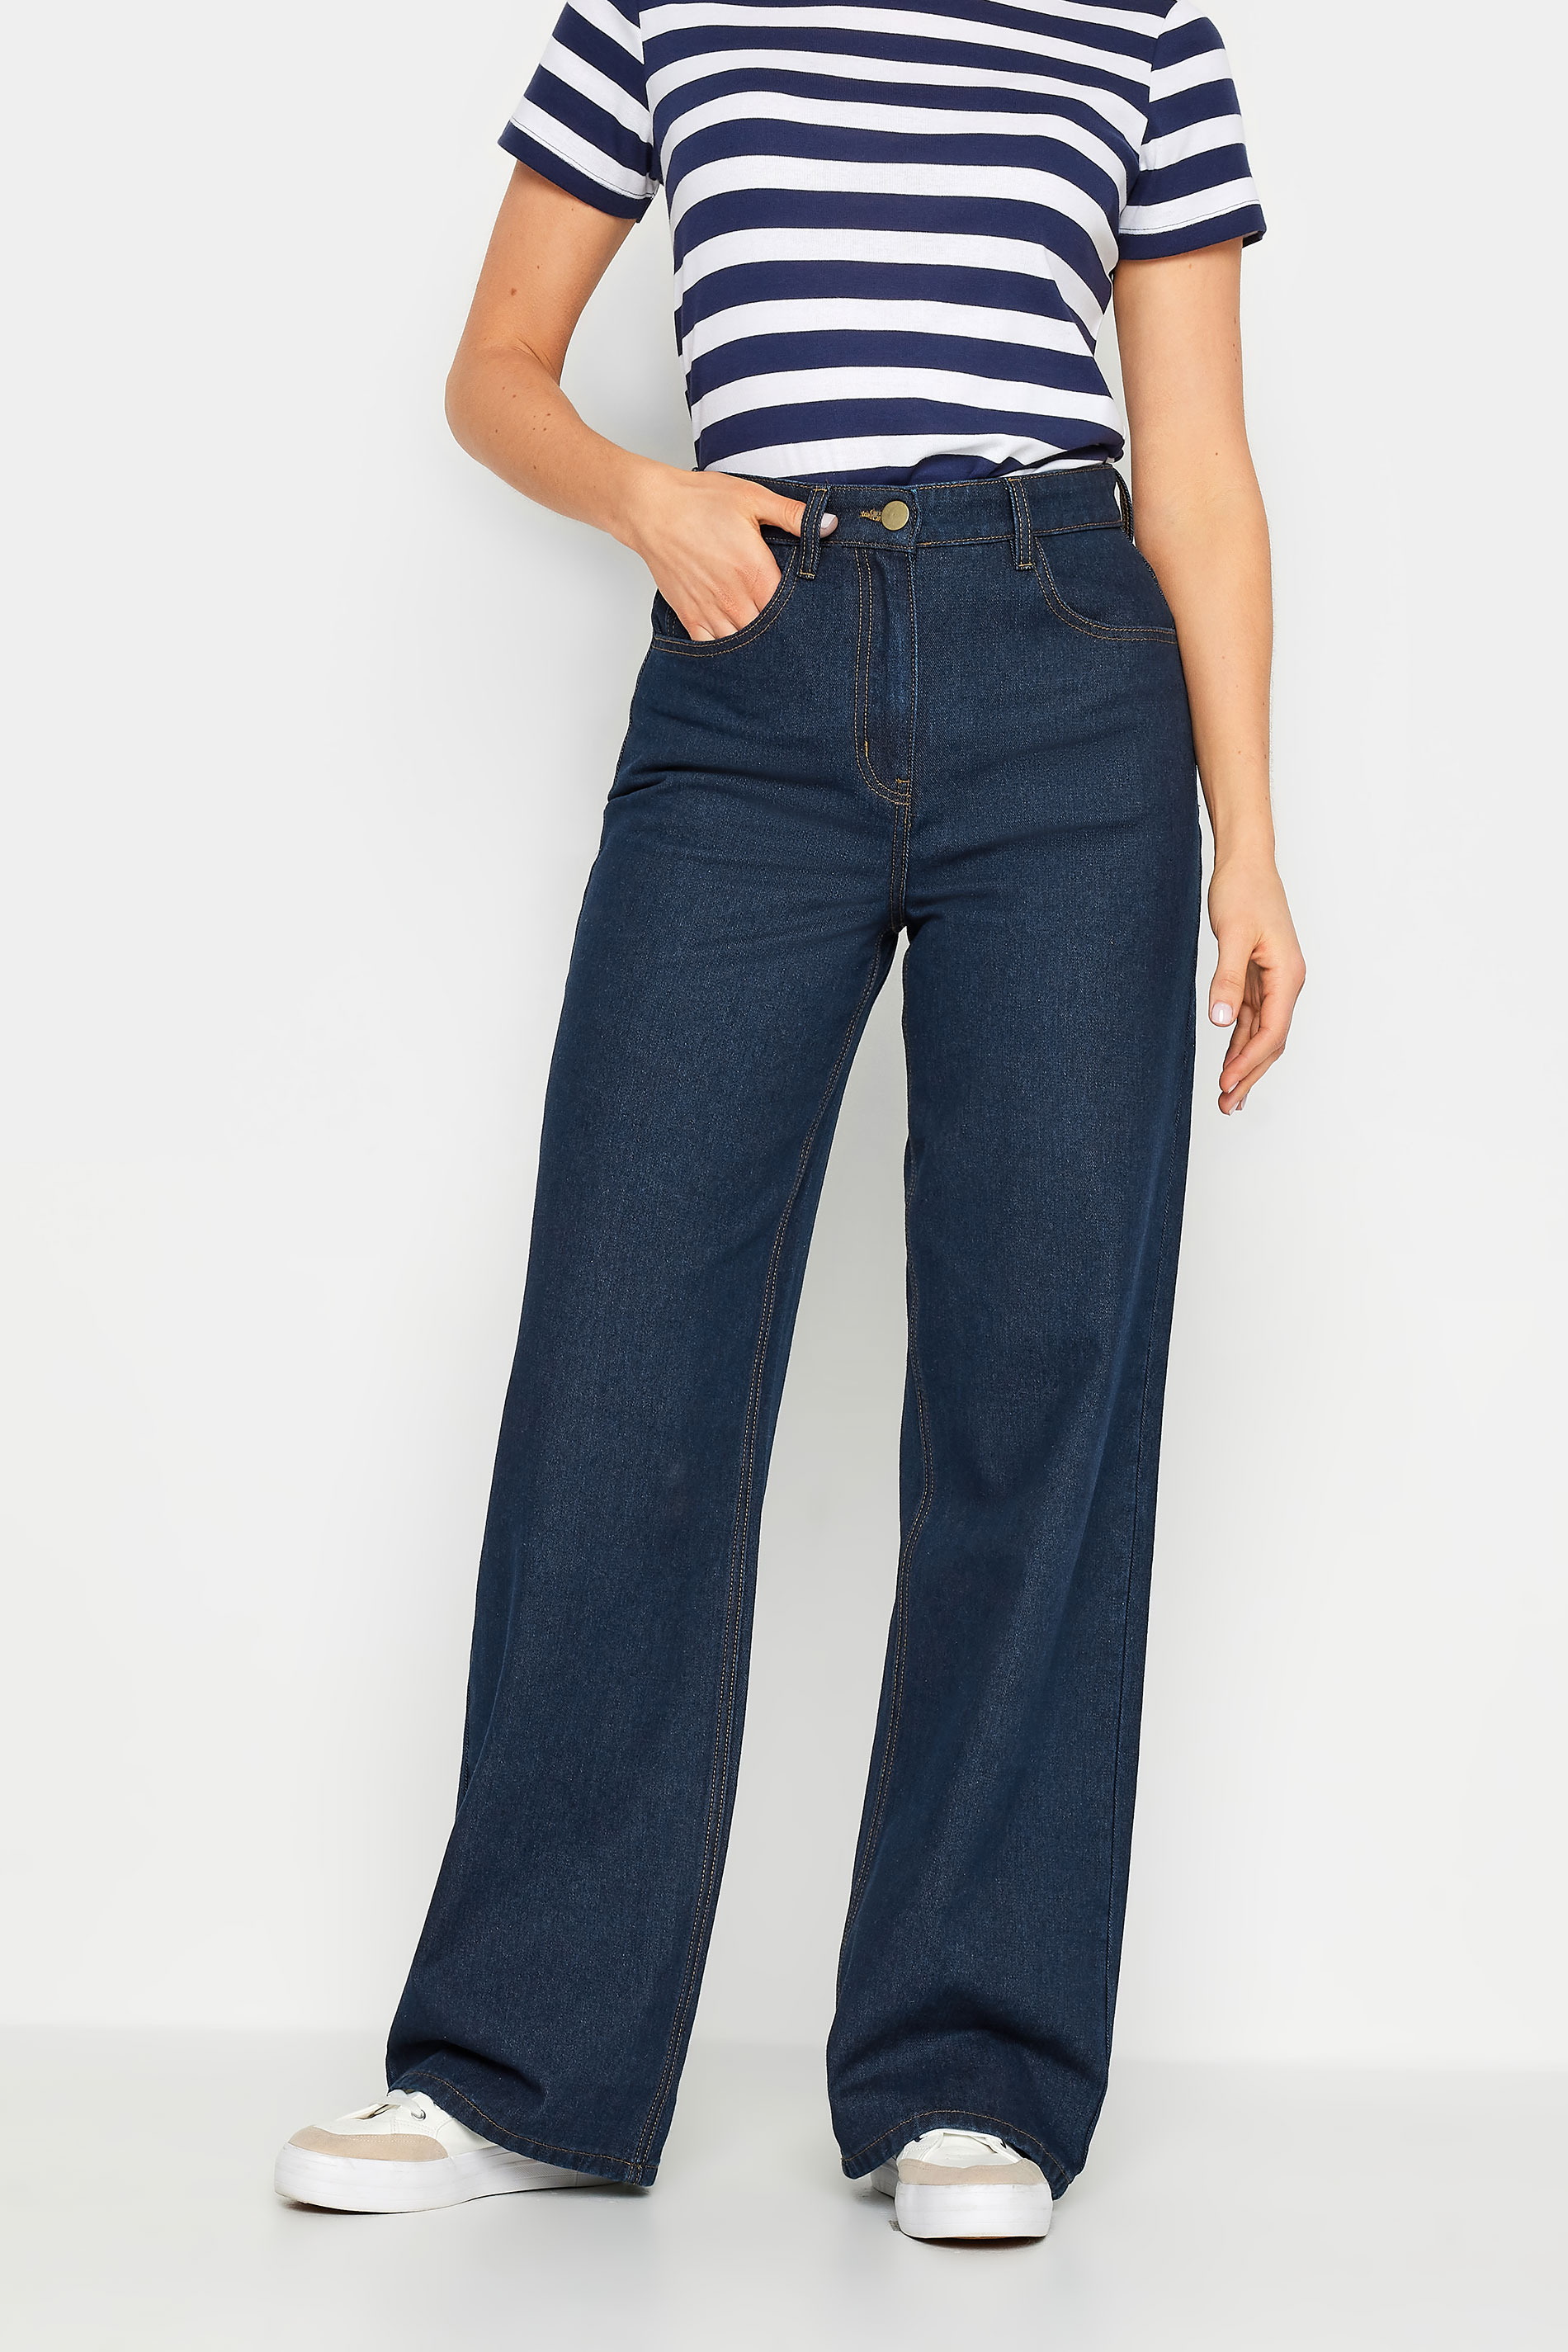 LTS Tall Womens Indigo Blue Wide Leg Jeans | Long Tall Sally 3